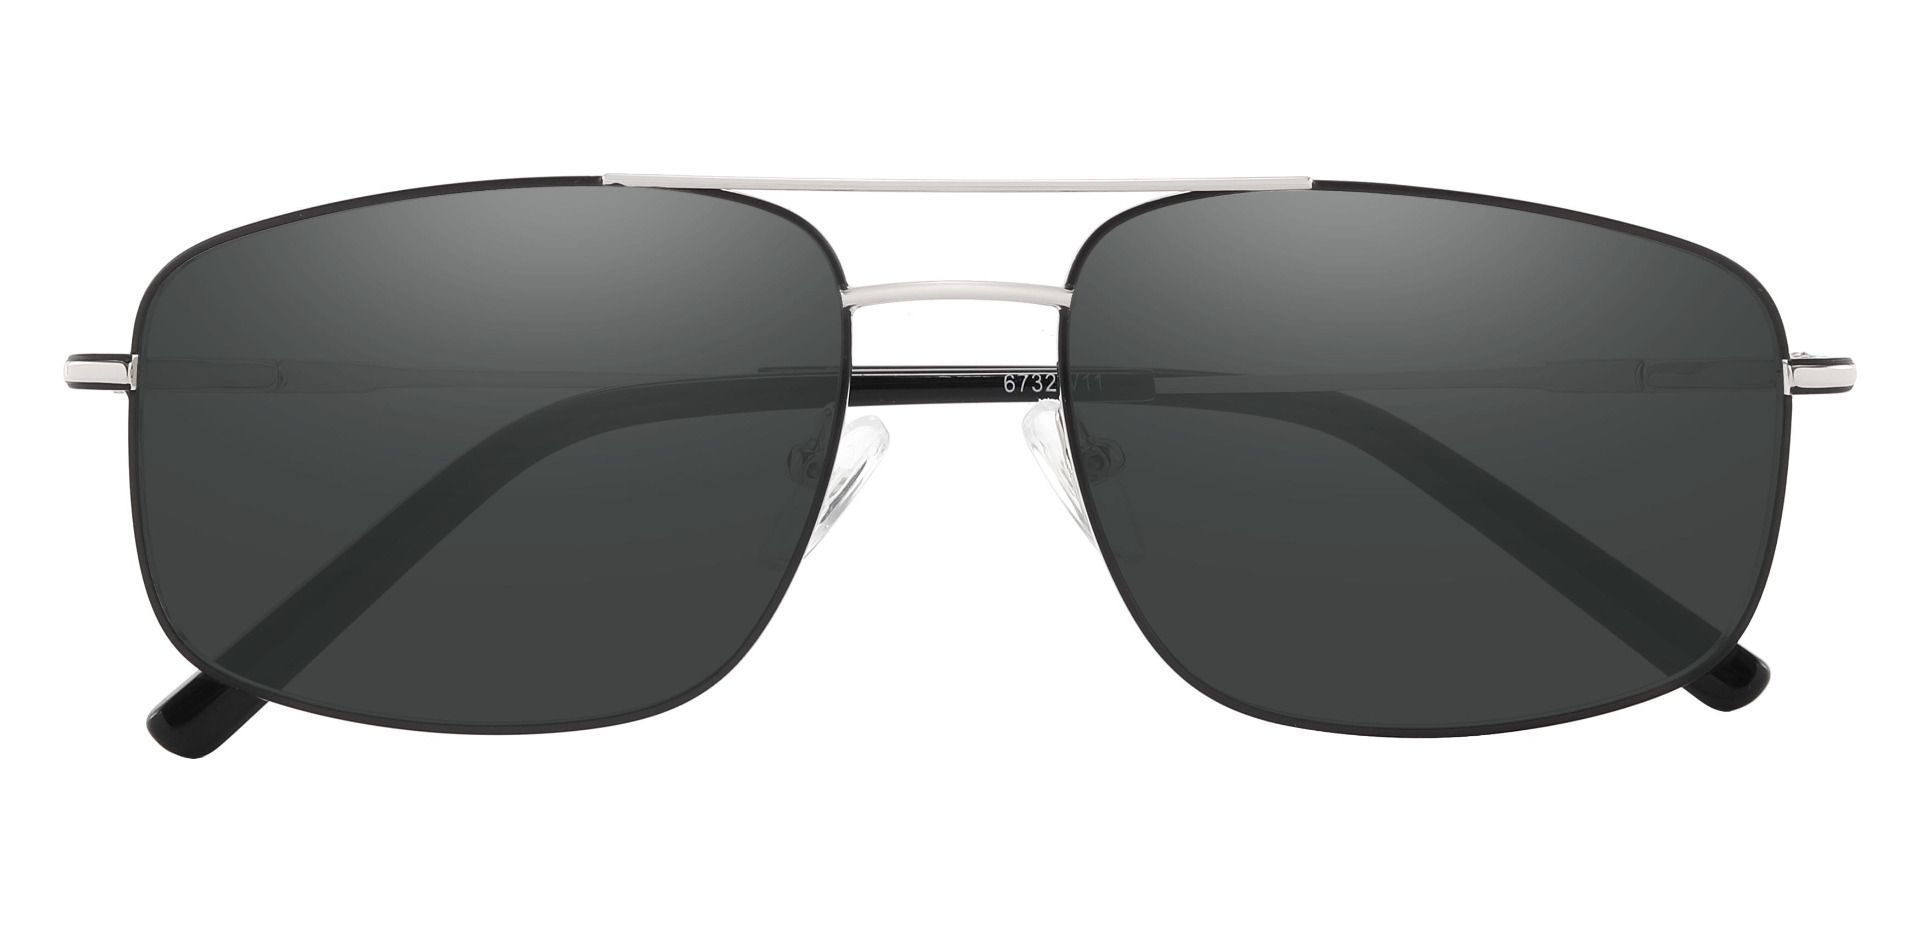 Turner Aviator Progressive Sunglasses - Silver Frame With Gray Lenses